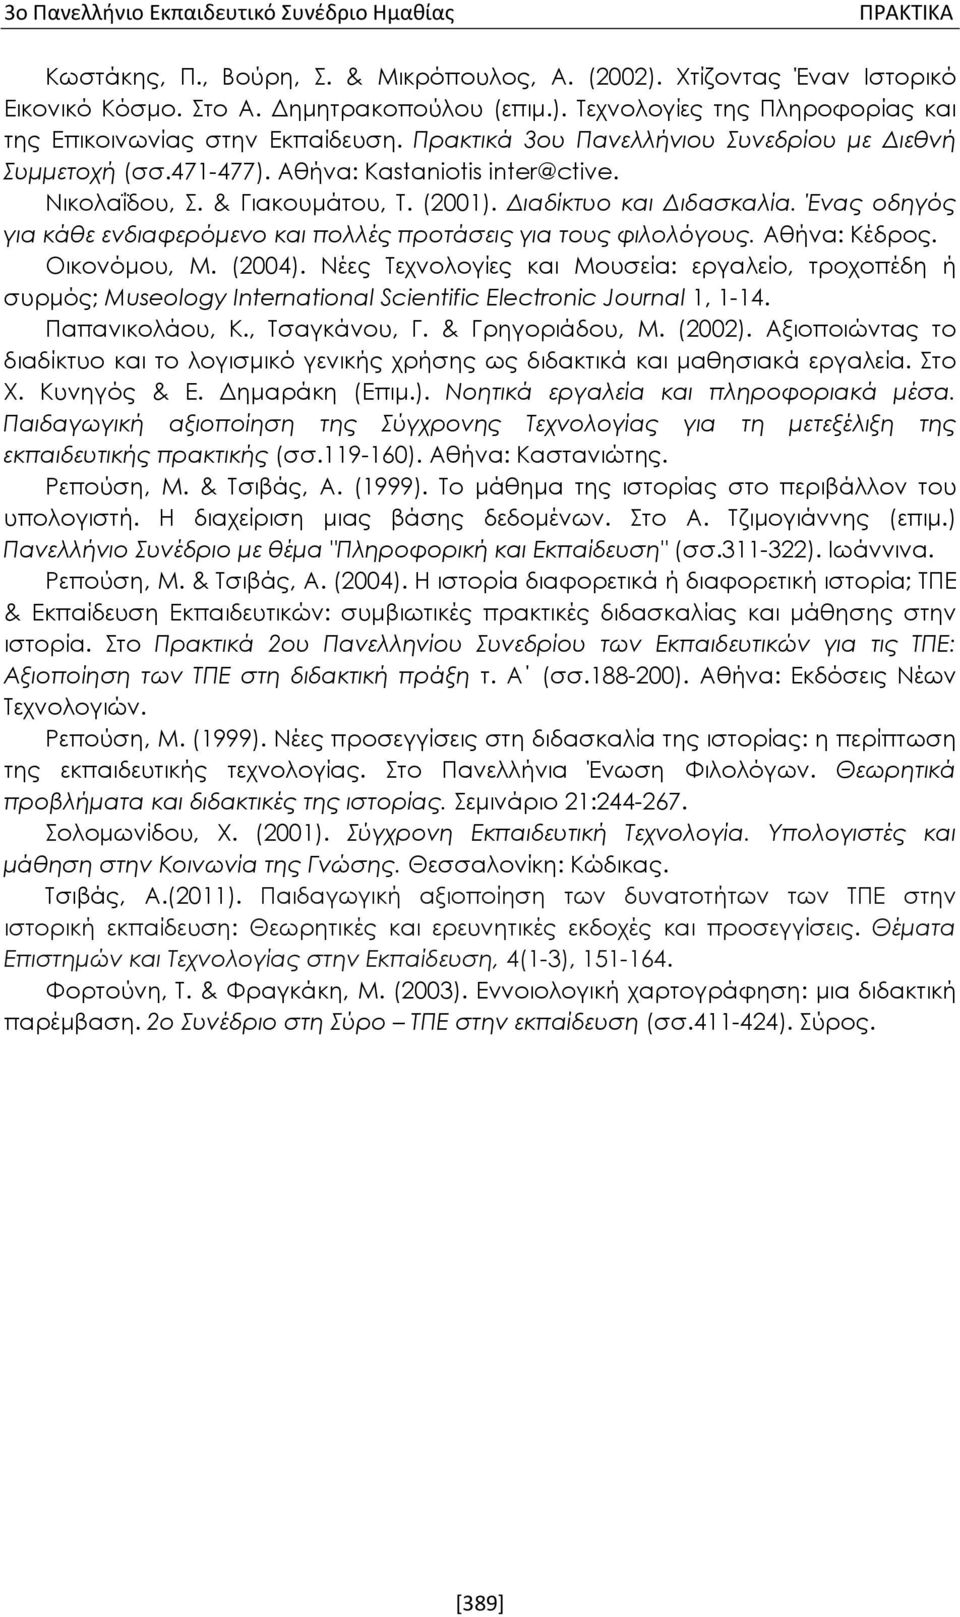 Ένας οδηγός για κάθε ενδιαφερόμενο και πολλές προτάσεις για τους φιλολόγους. Αθήνα: Κέδρος. Οικονόμου, Μ. (2004).